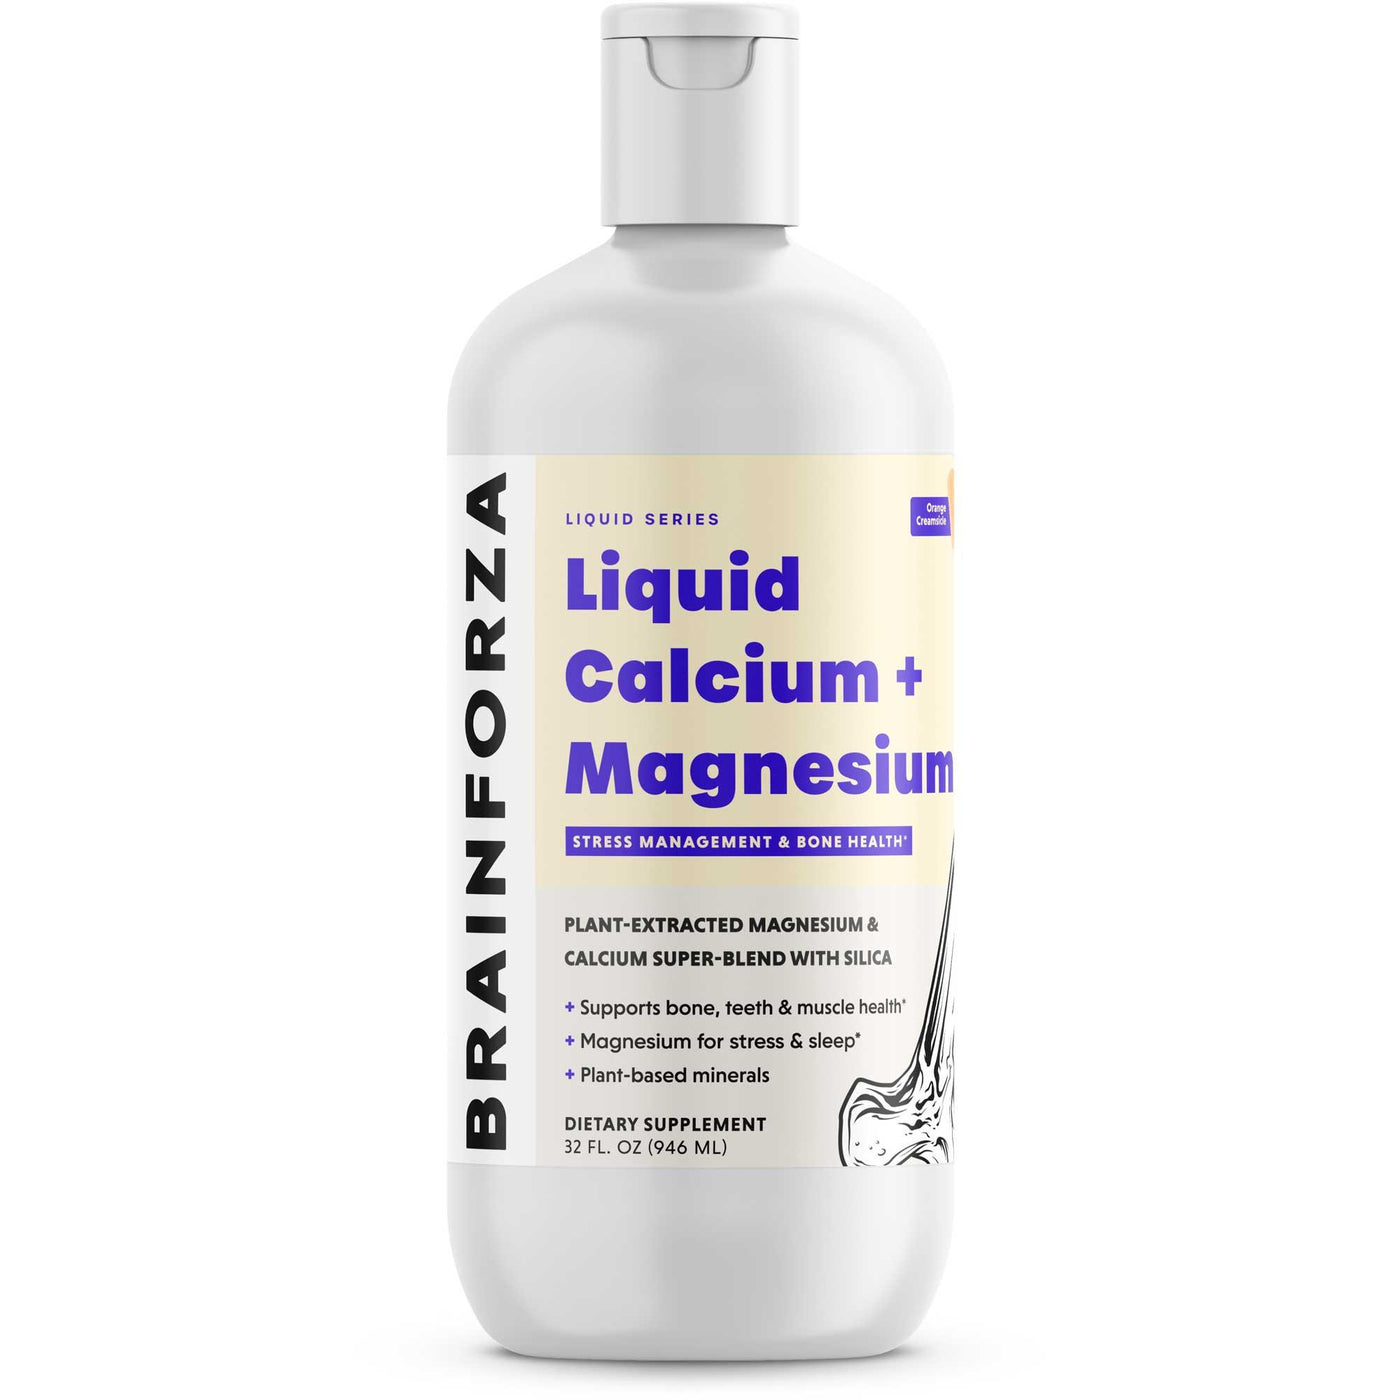 Brain Forza Liquid Magnesium Calcium Plat Based Vegetarian Supplement Bone Sleep